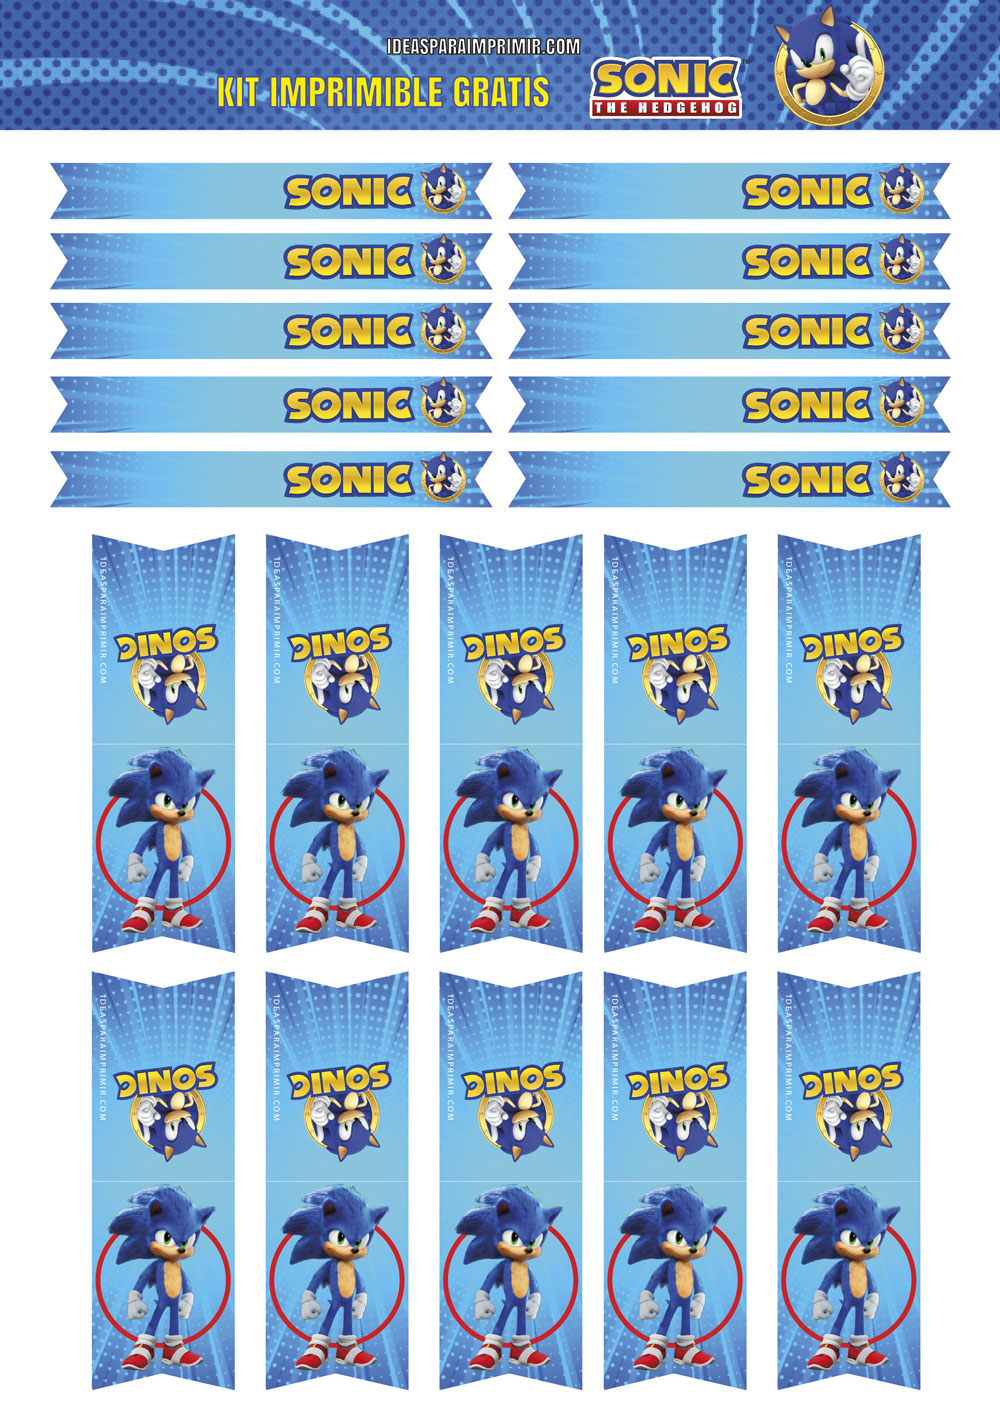 Etiquetas o Stickers de Sonic